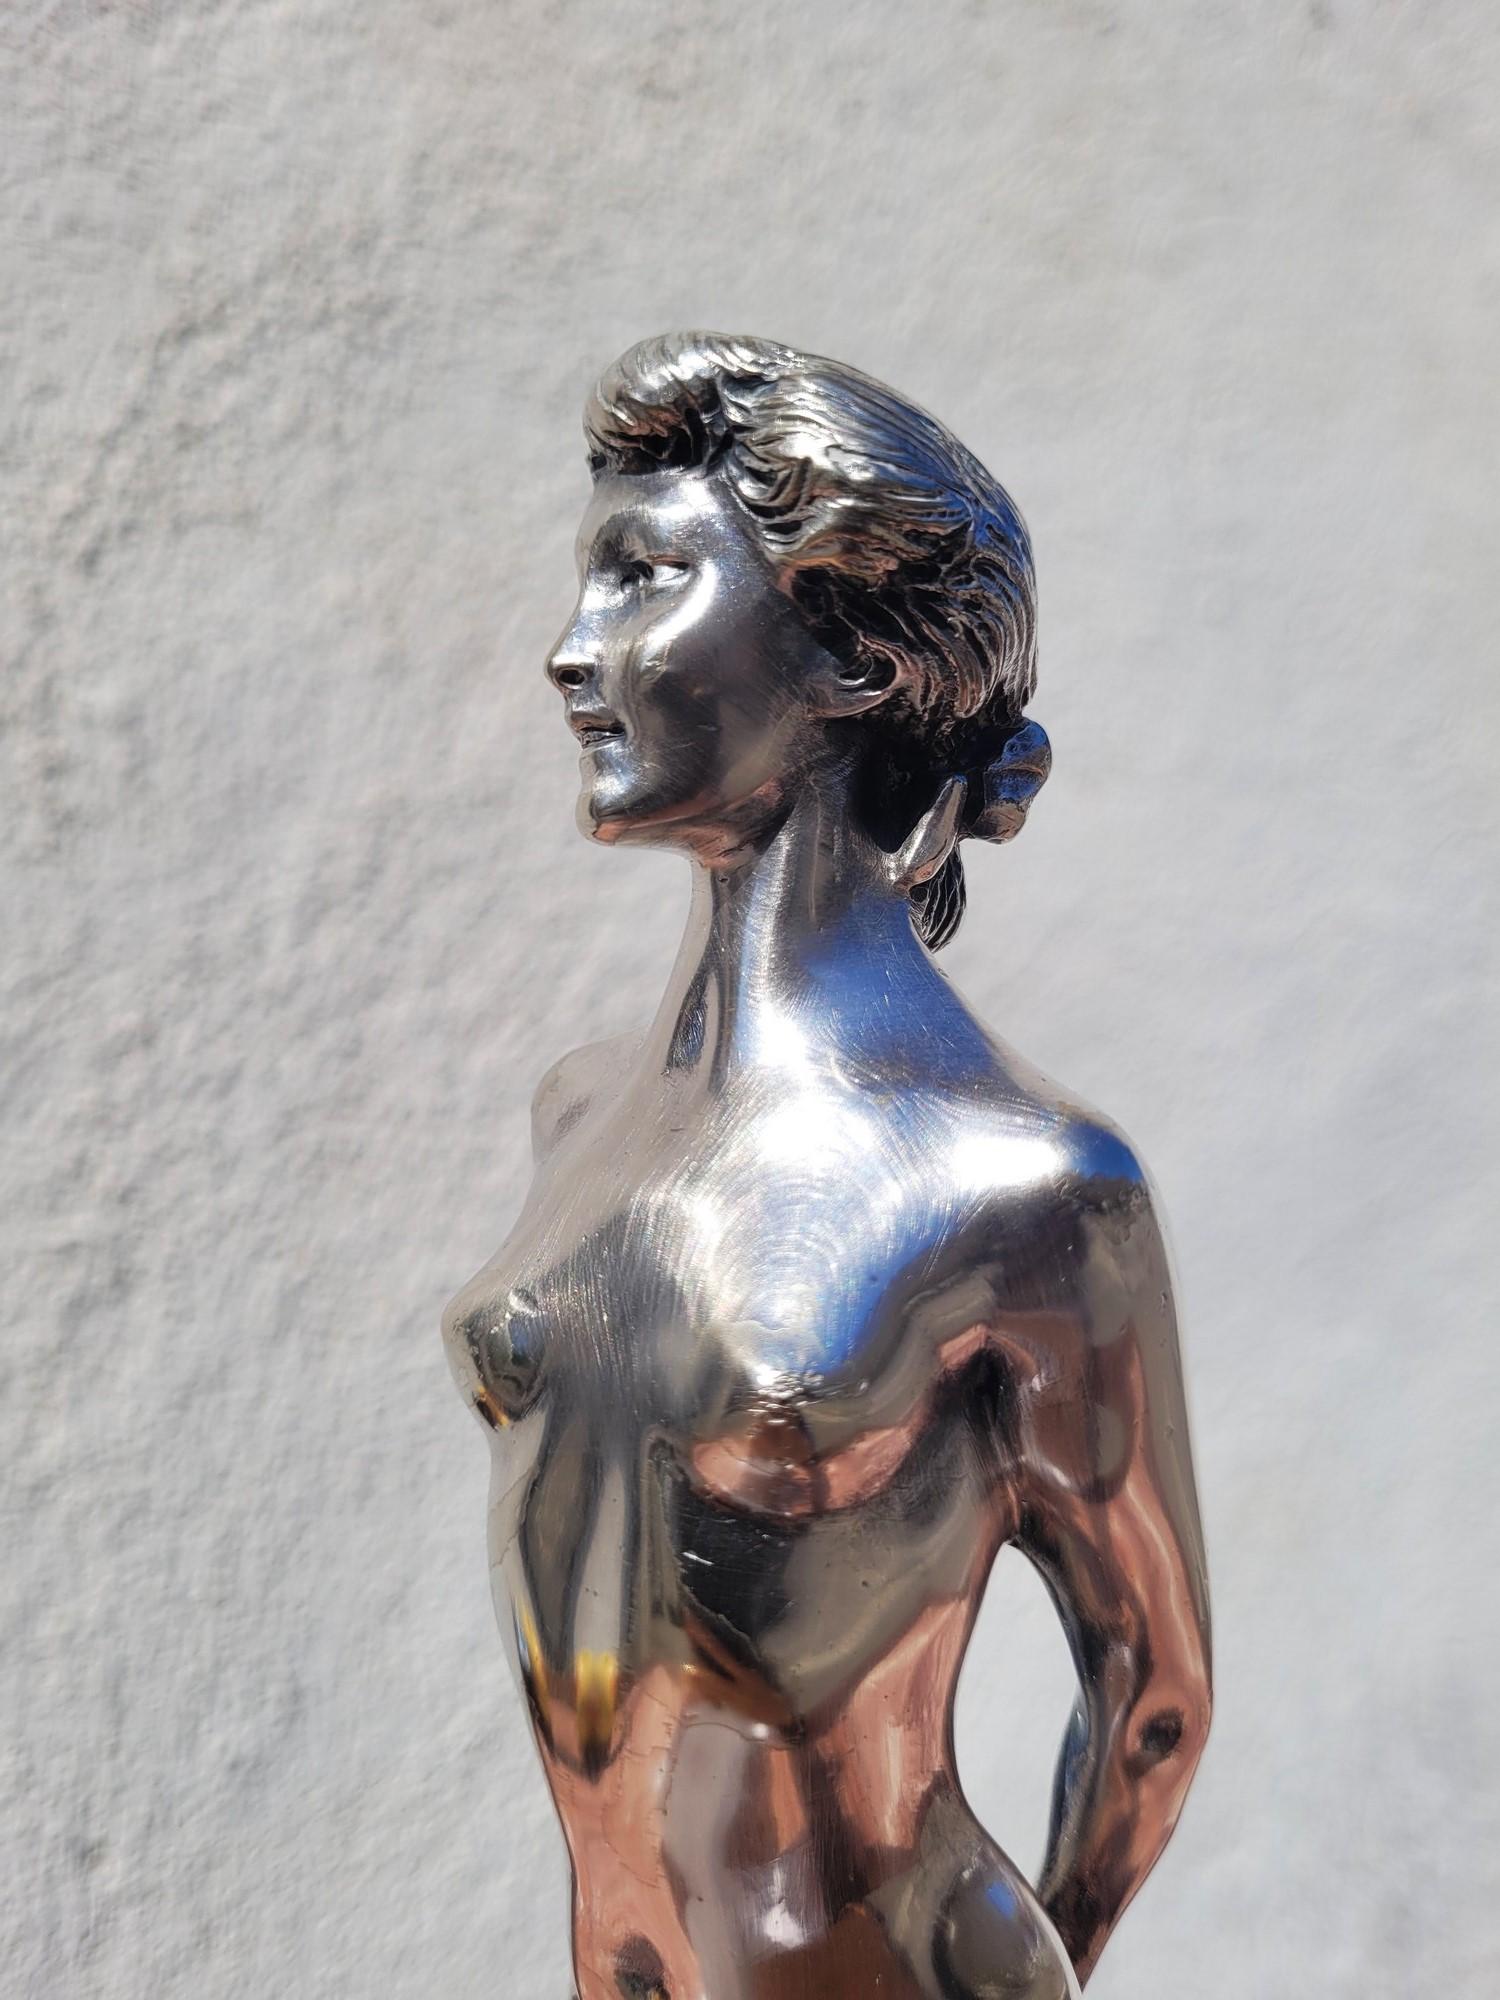 Versilberte Bronze einer nackten Frau mit hochgestecktem Haar, die ein Tuch hinter dem Rücken hält.

Diese Skulptur ist signiert von Joe Descomps

Joe Descomps ist ein französischer Künstler, der seit 1883 Mitglied der Gesellschaft der Künstler ist;